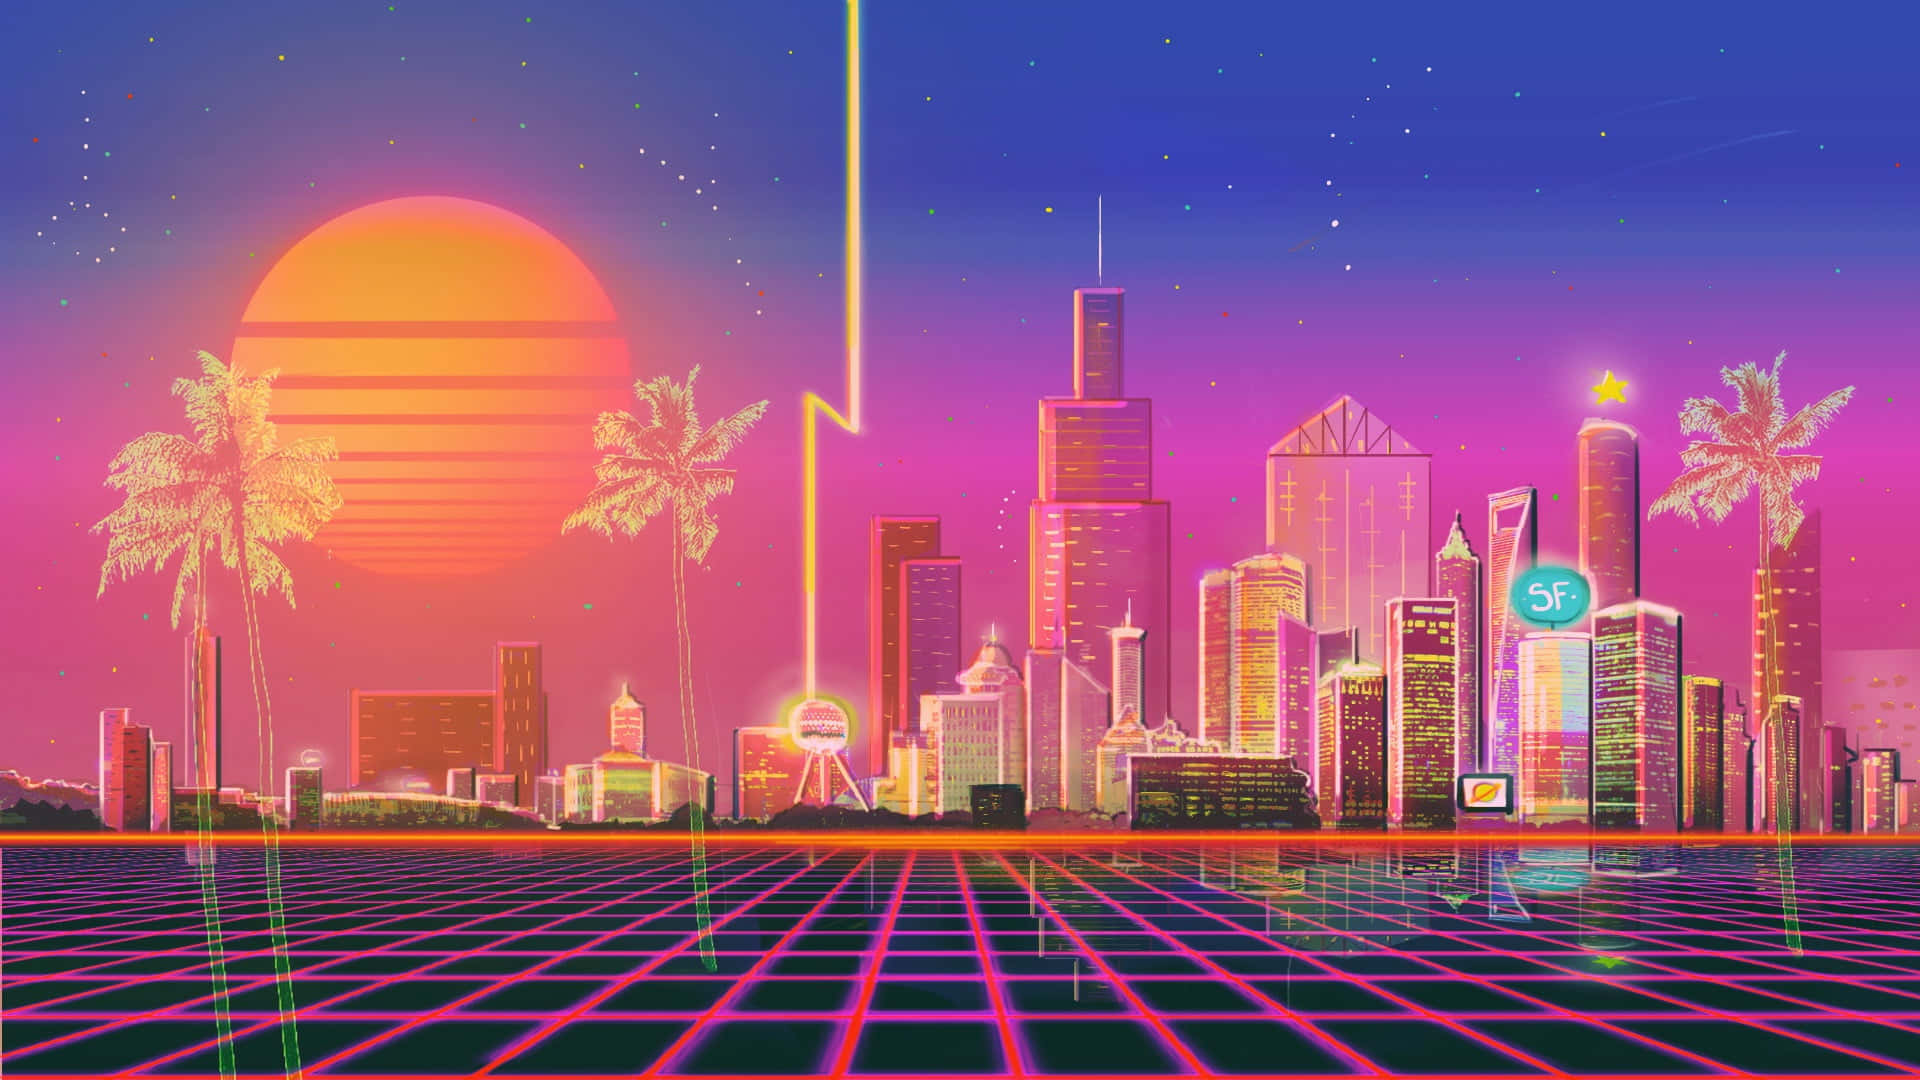 City Skyline Vaporwave Digital Illustration Background